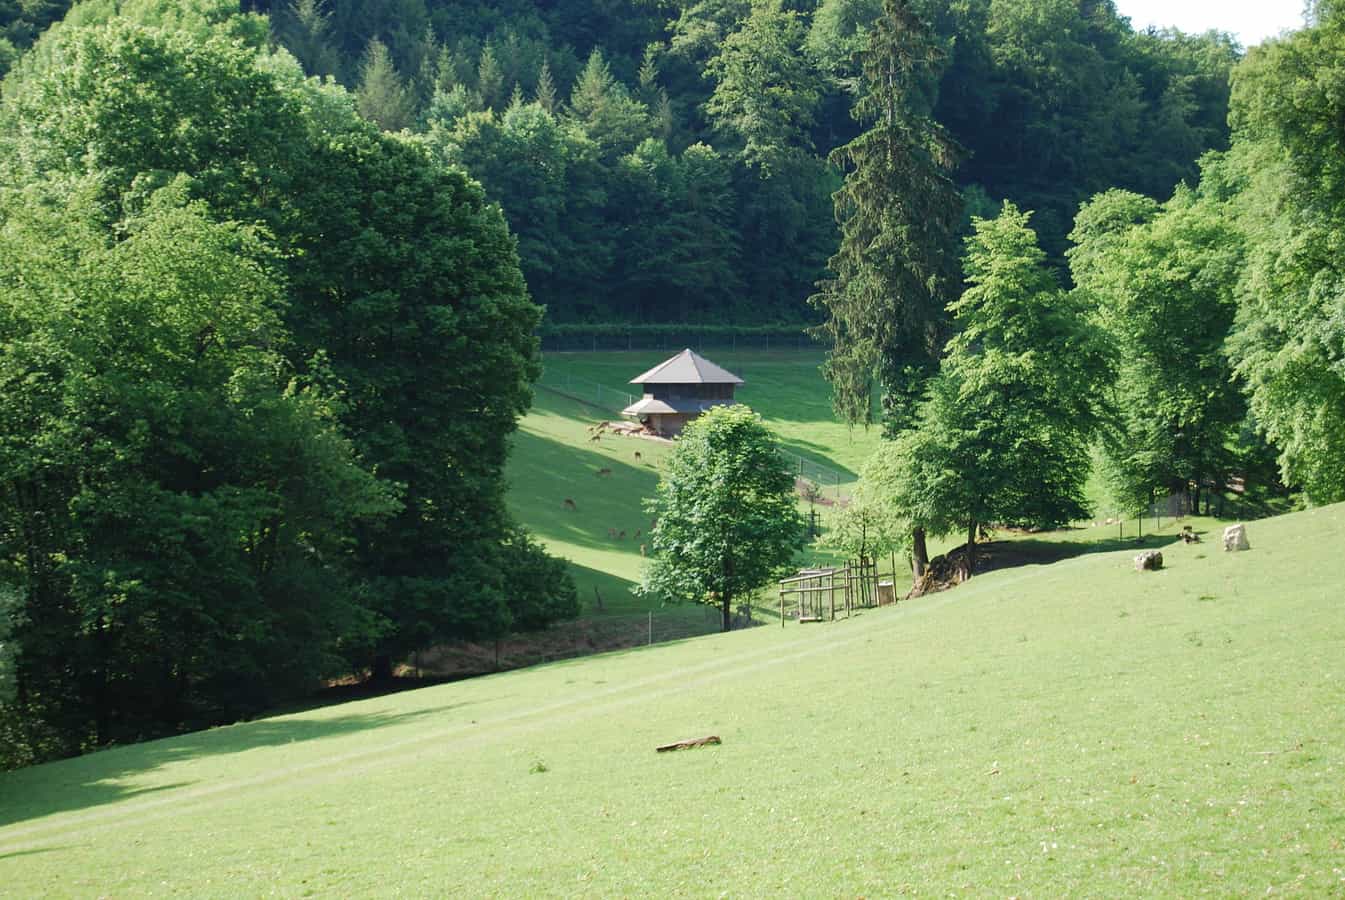 Wildpark Roggenhausen in Aarau und Eppenberg-Wöschnau, Kanton Solothurn